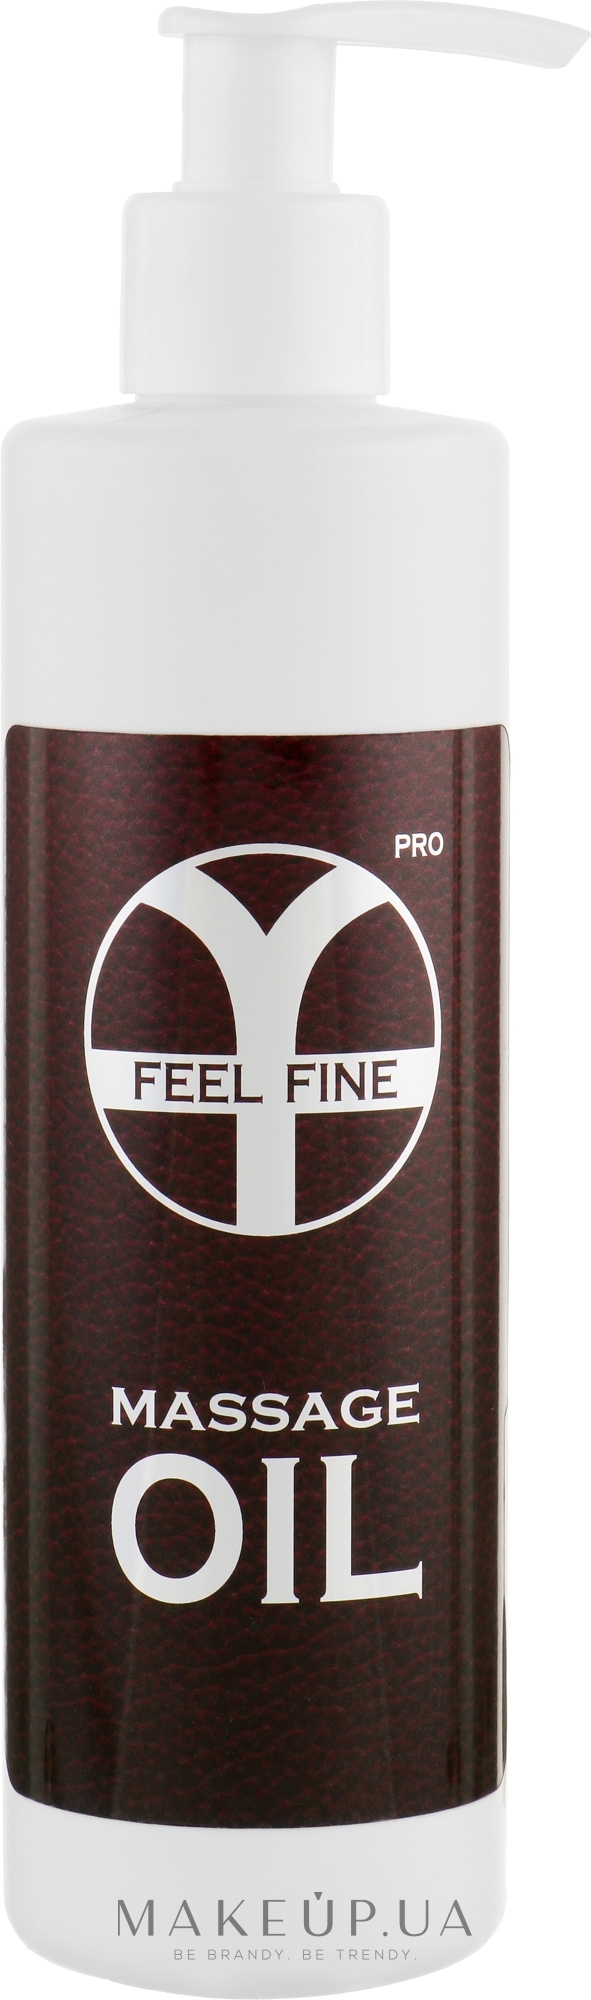 Масло для профессионального массажа - Feel Fine Pro Massage Oil — фото 250ml